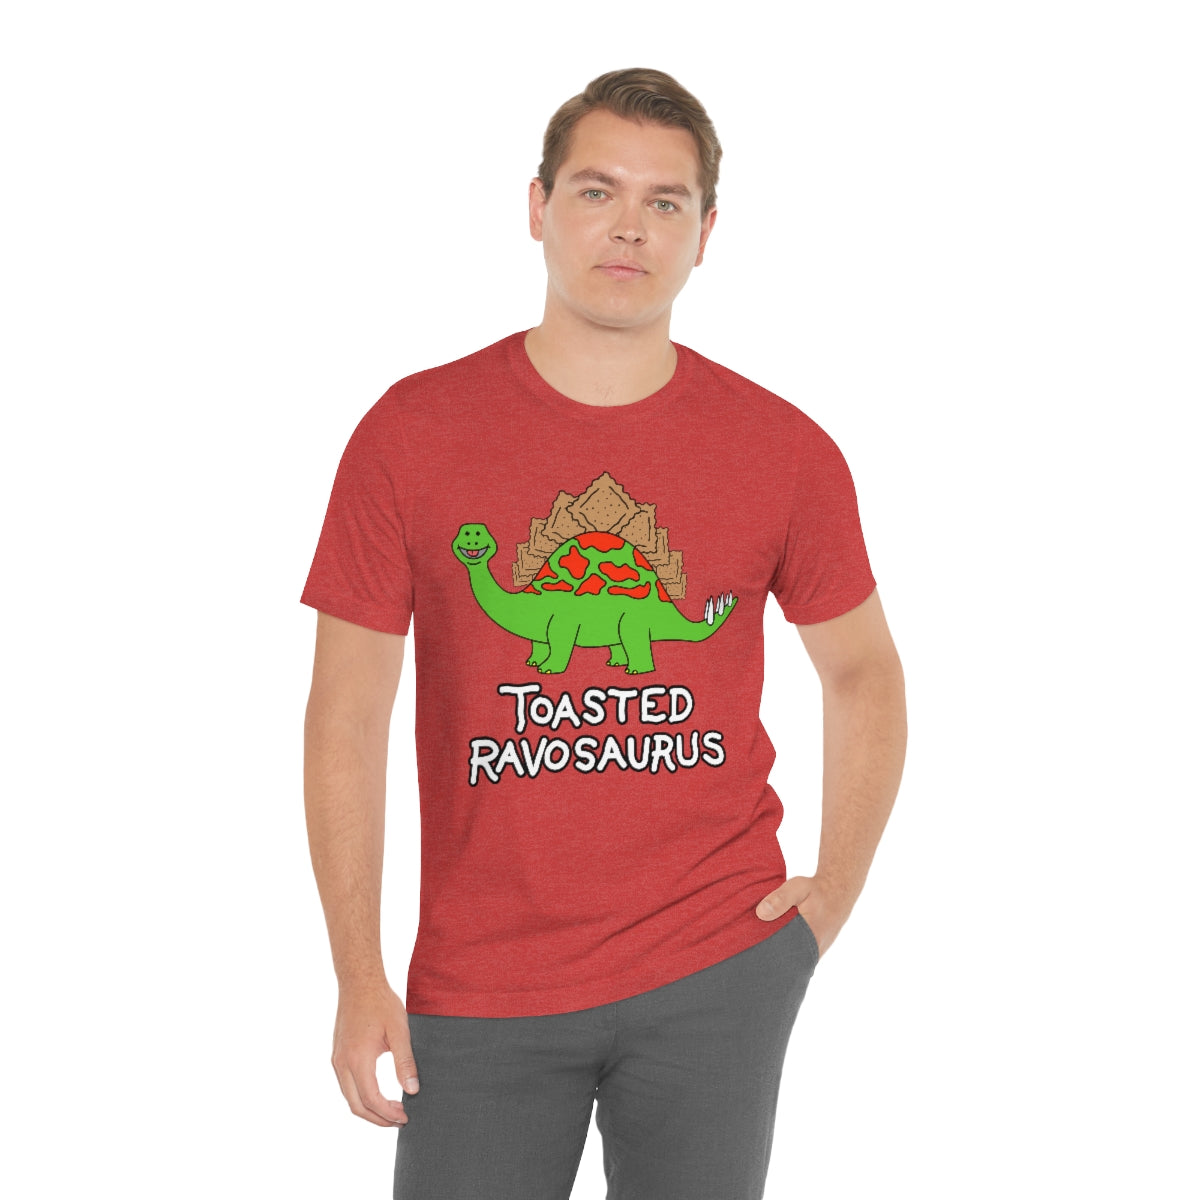 Toasted Ravosaurus Adult